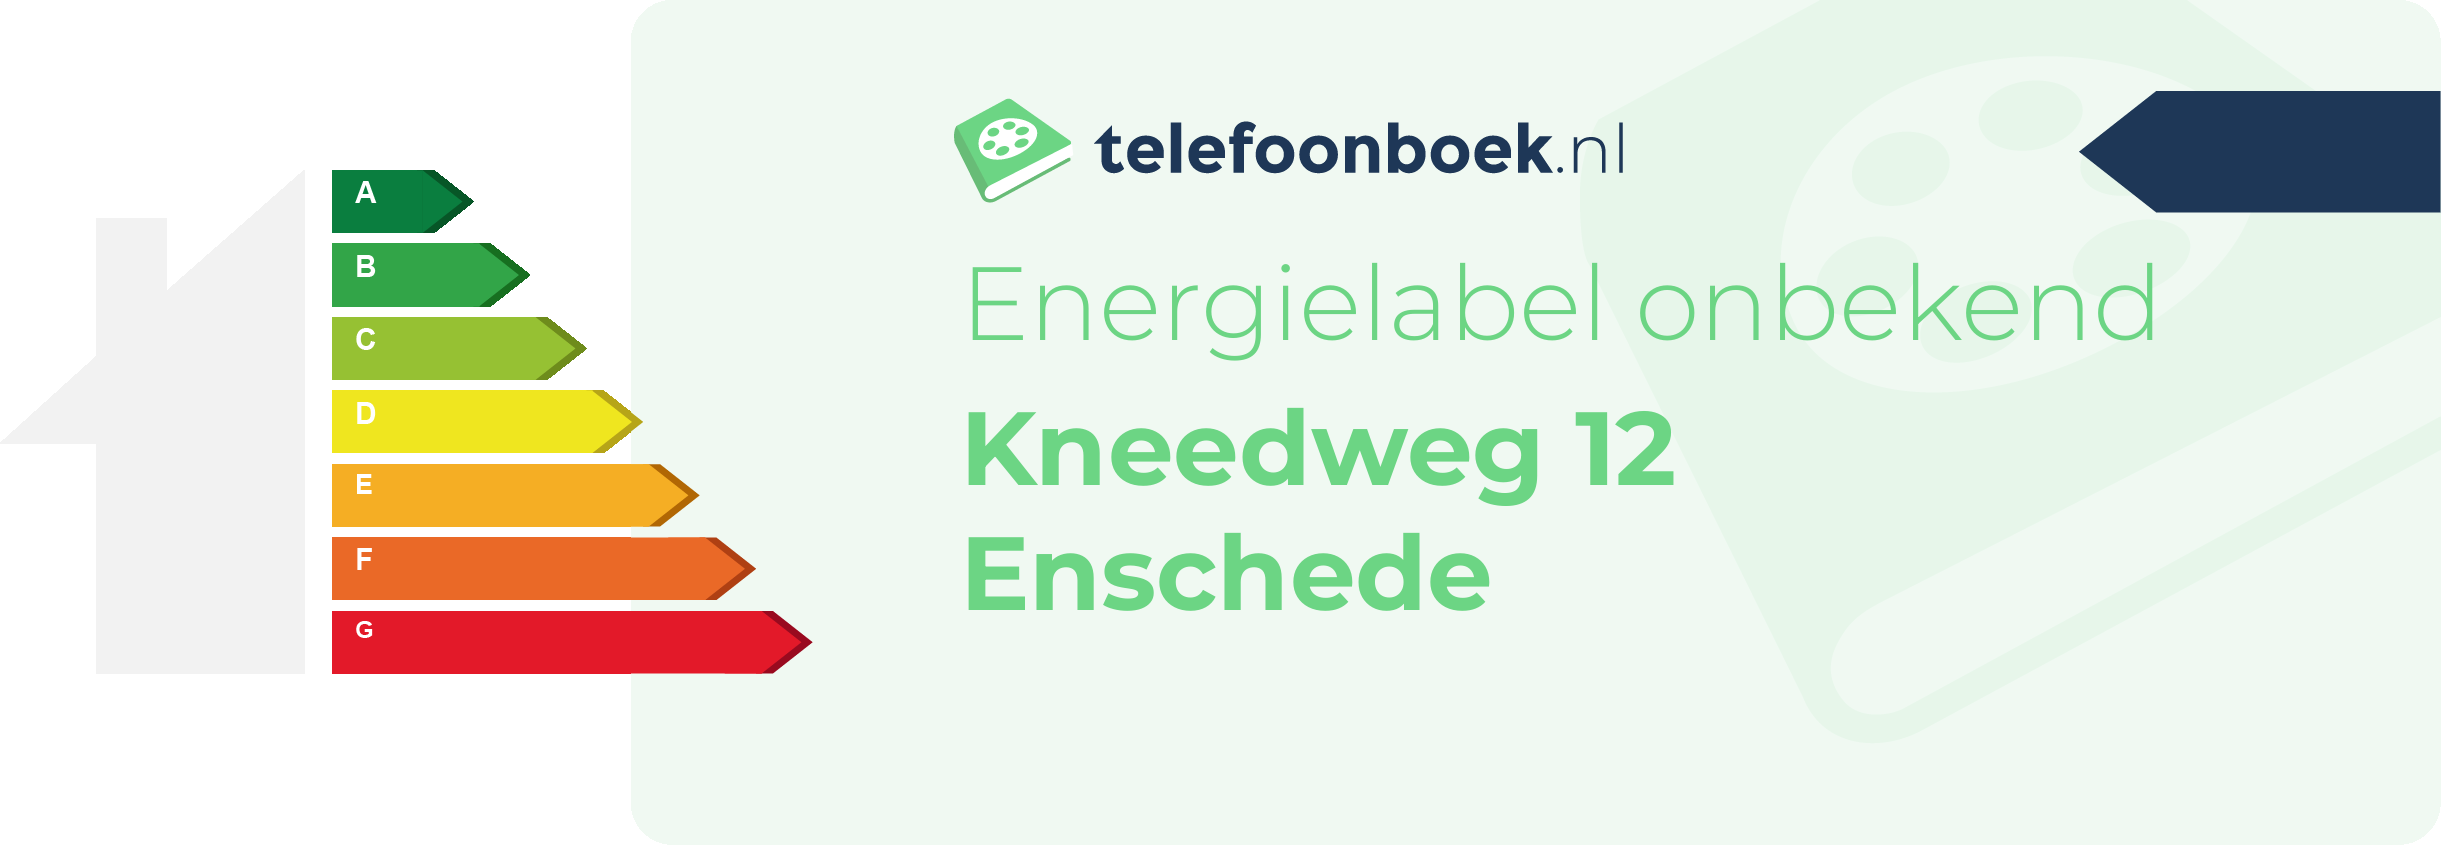 Energielabel Kneedweg 12 Enschede